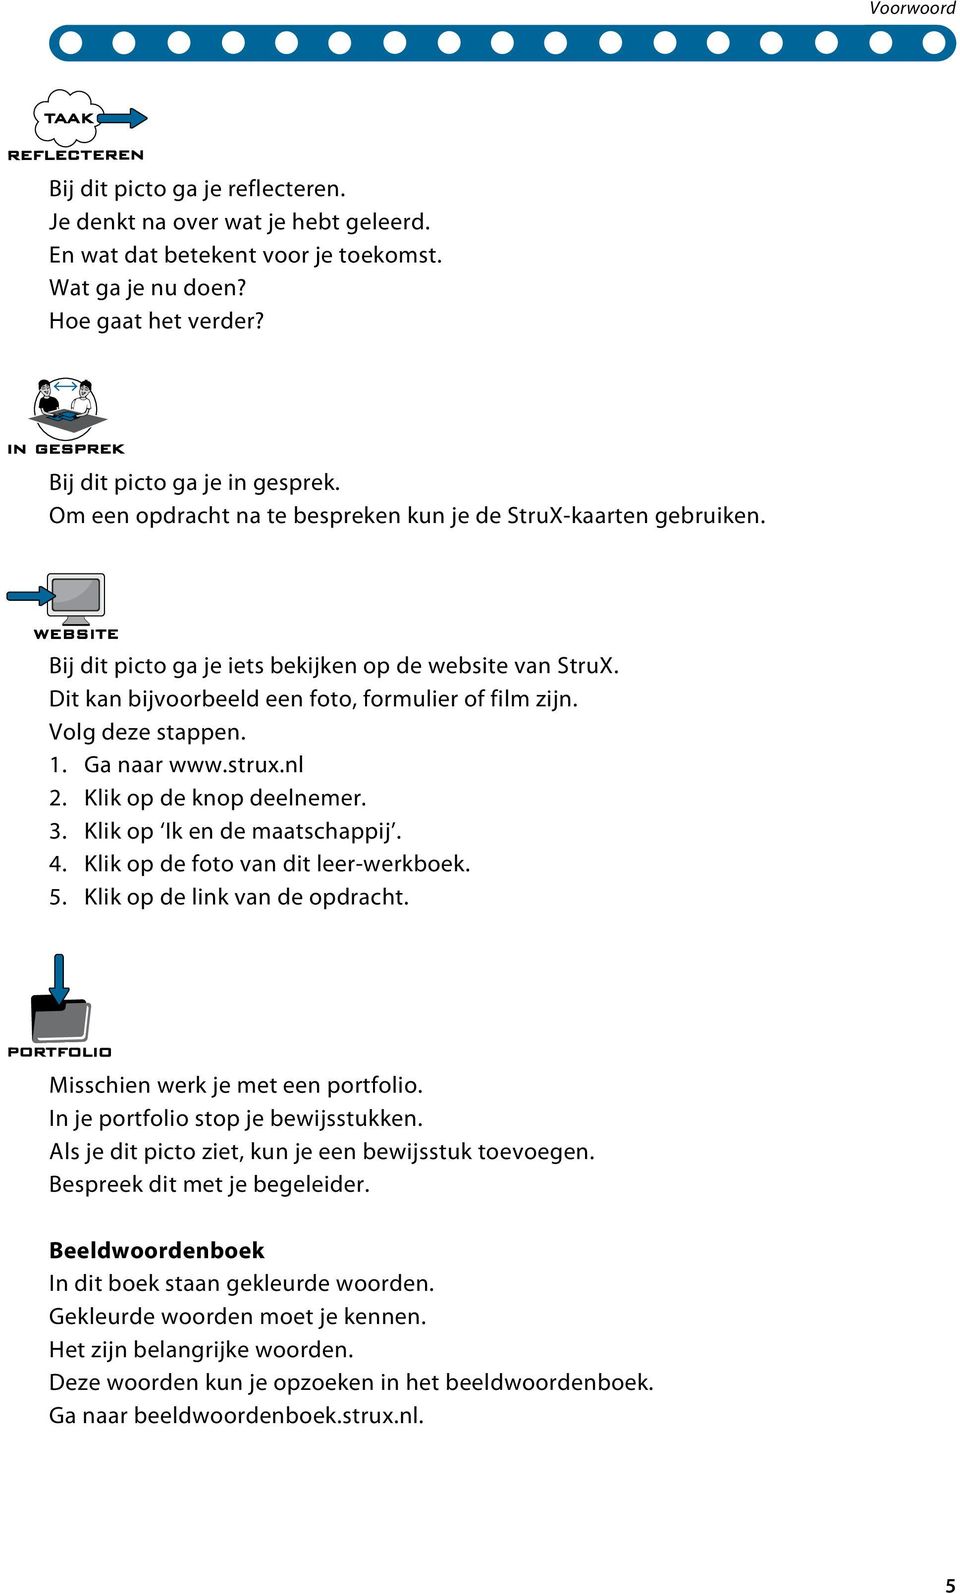 1. Ga naar www.strux.nl 2. Klik op de knop deelnemer. 3. Klik op Ik en de maatschappij. 4. Klik op de foto van dit leer-werkboek. 5. Klik op de link van de opdracht.